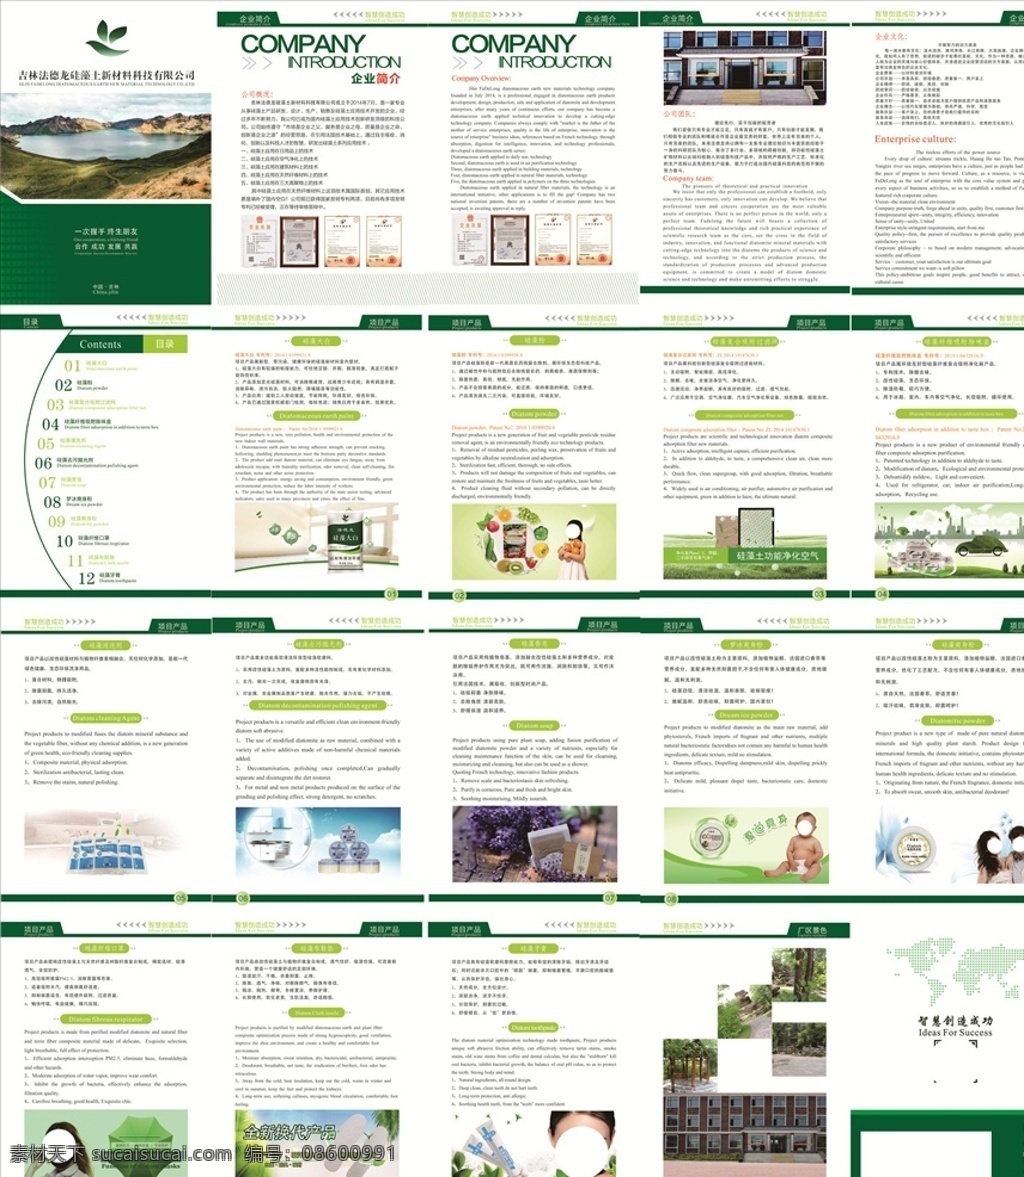 宣传册 画册 企业画册 公司宣传册 产品手册 硅藻土 硅藻泥 环保 健康 画册设计